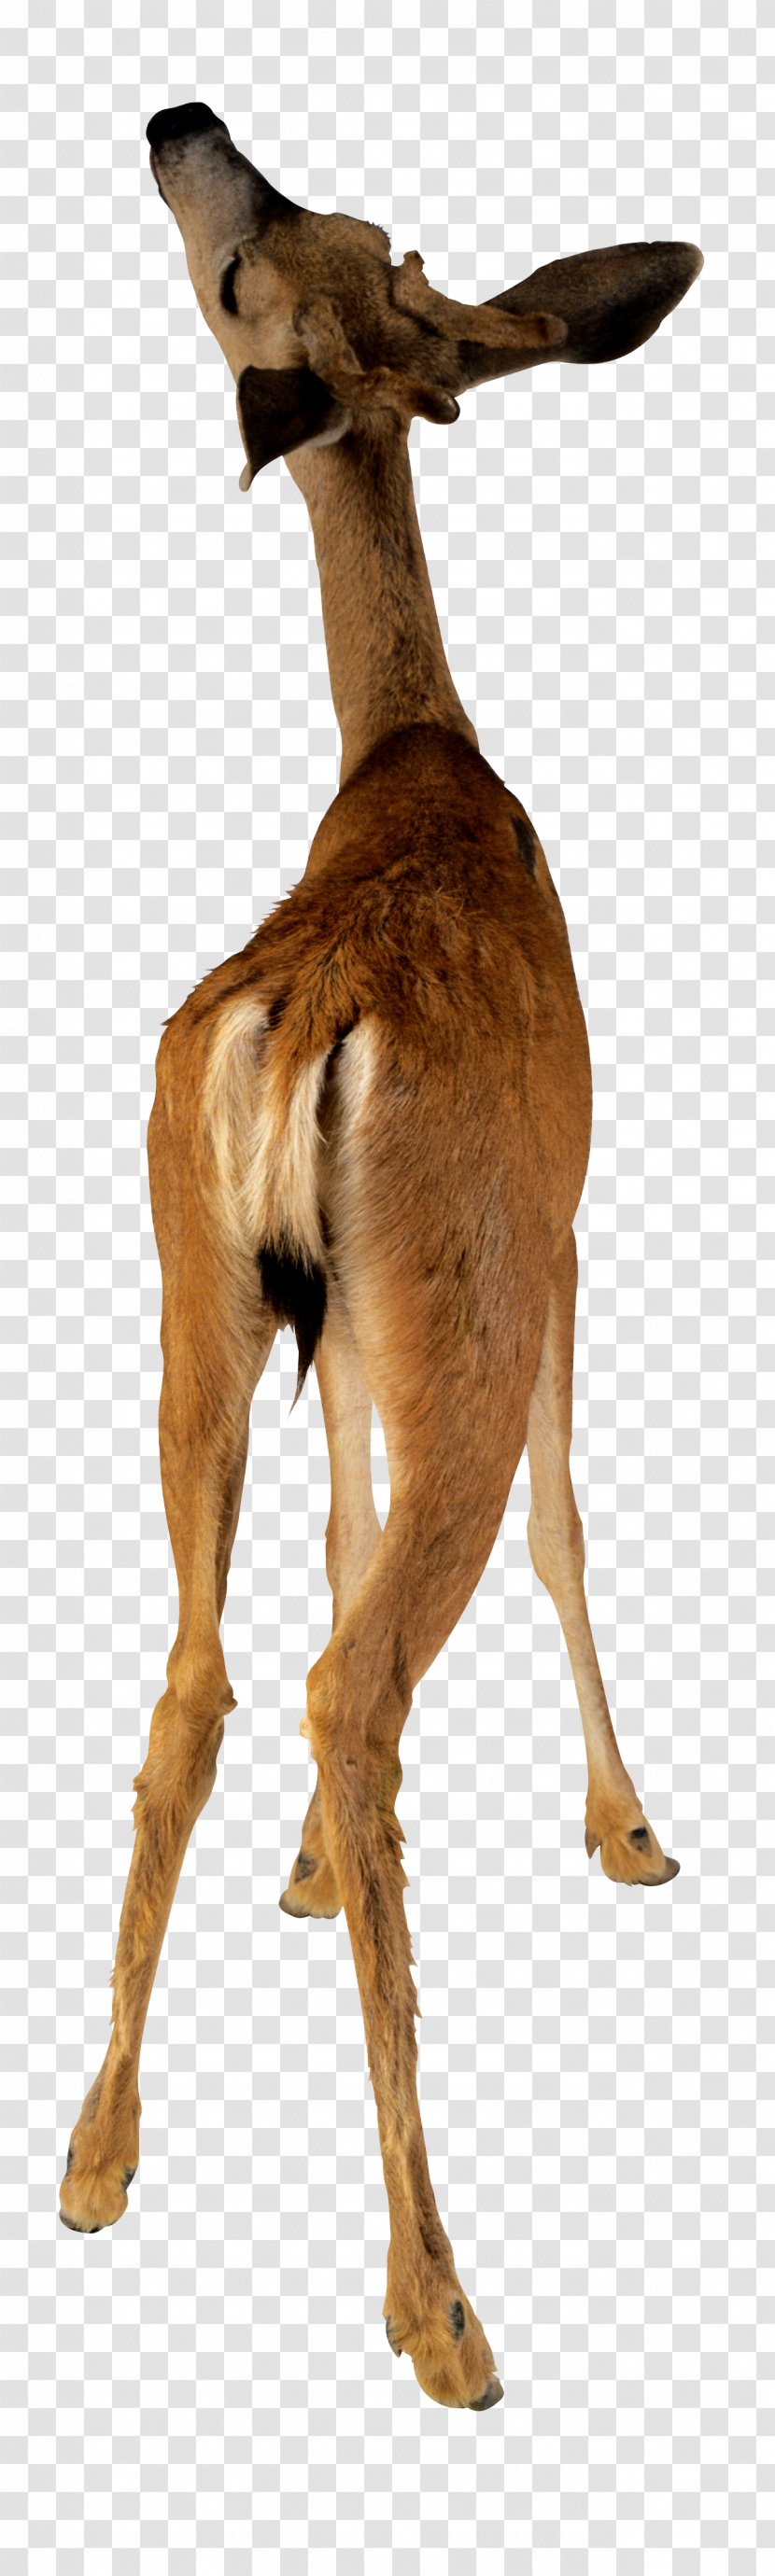 Deer Animal Camel Stock Photography - Impala Transparent PNG